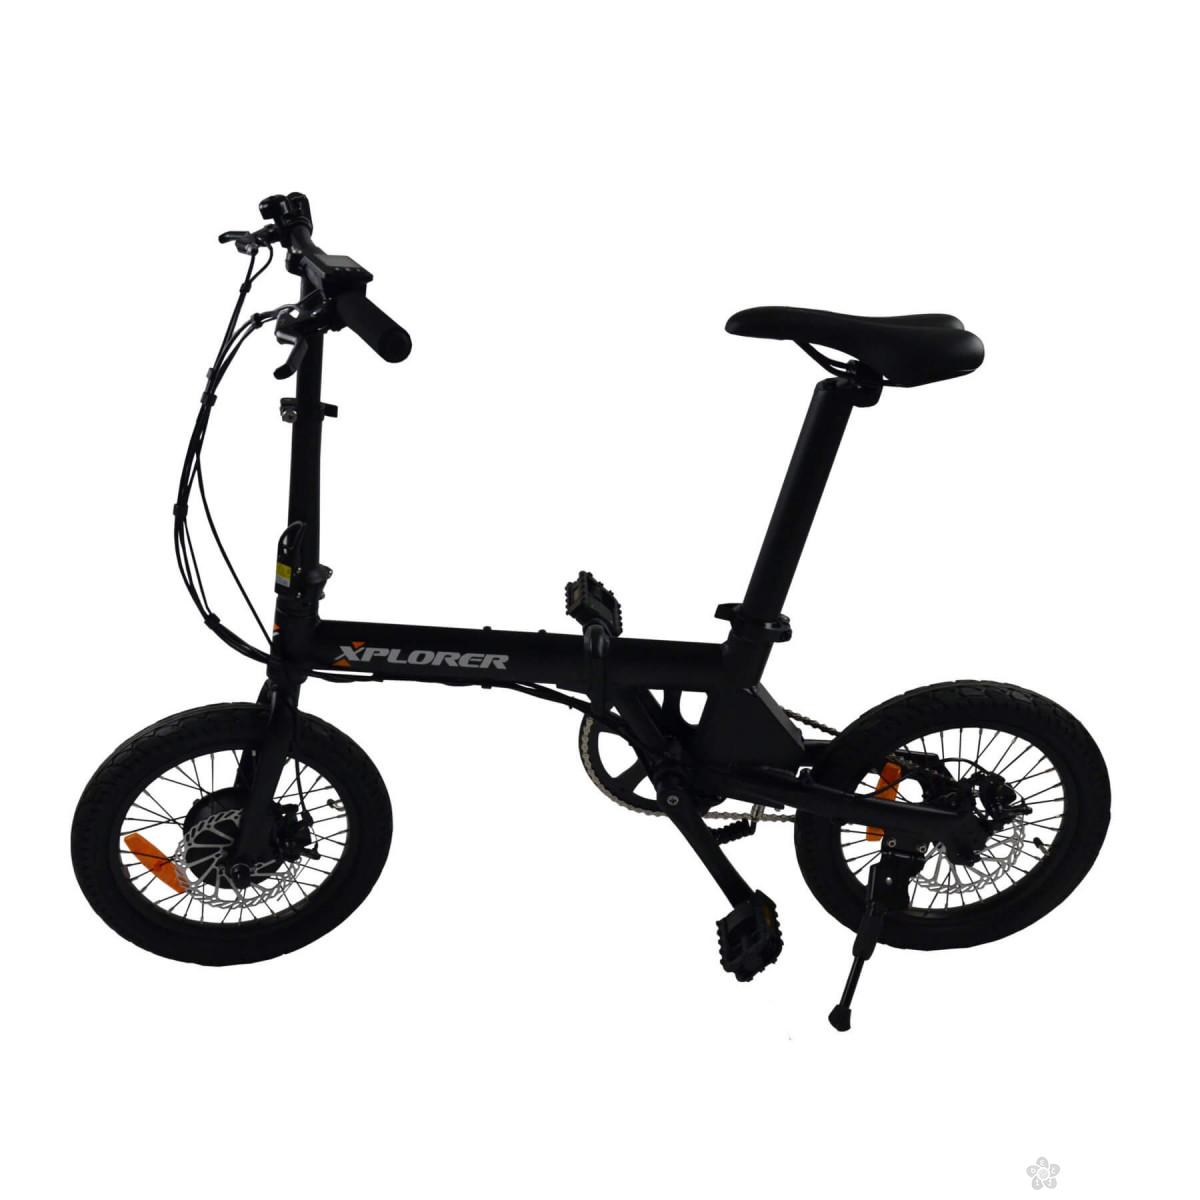 Električni bicikl Xplorer Mini, 6877 